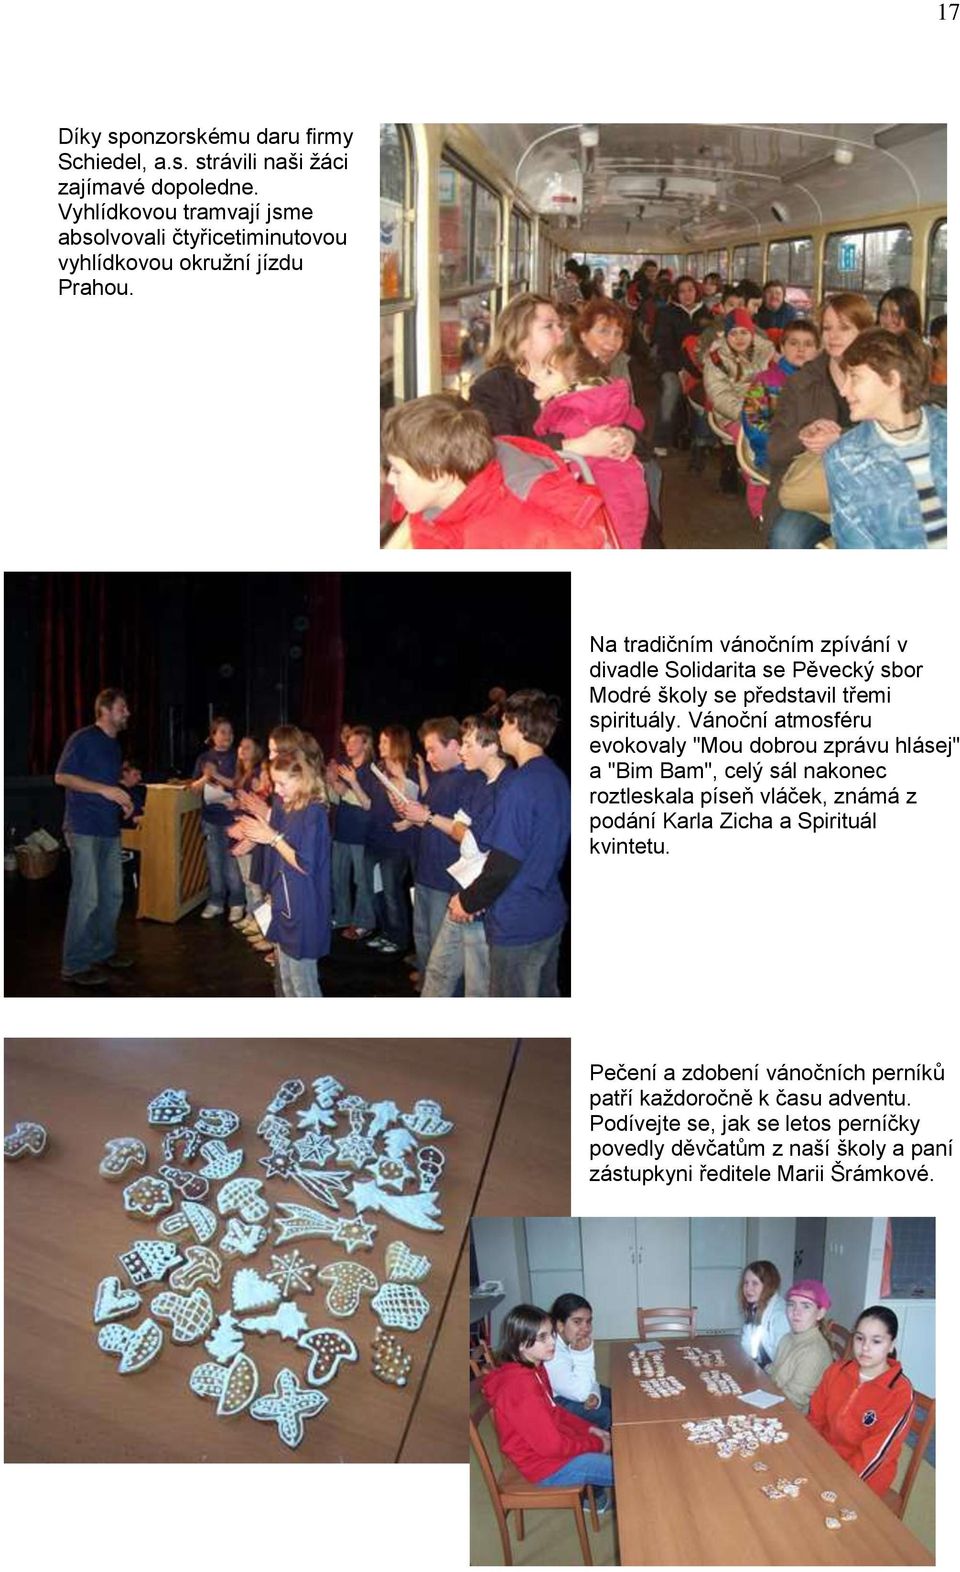 Na tradičním vánočním zpívání v divadle Solidarita se Pěvecký sbor Modré školy se představil třemi spirituály.